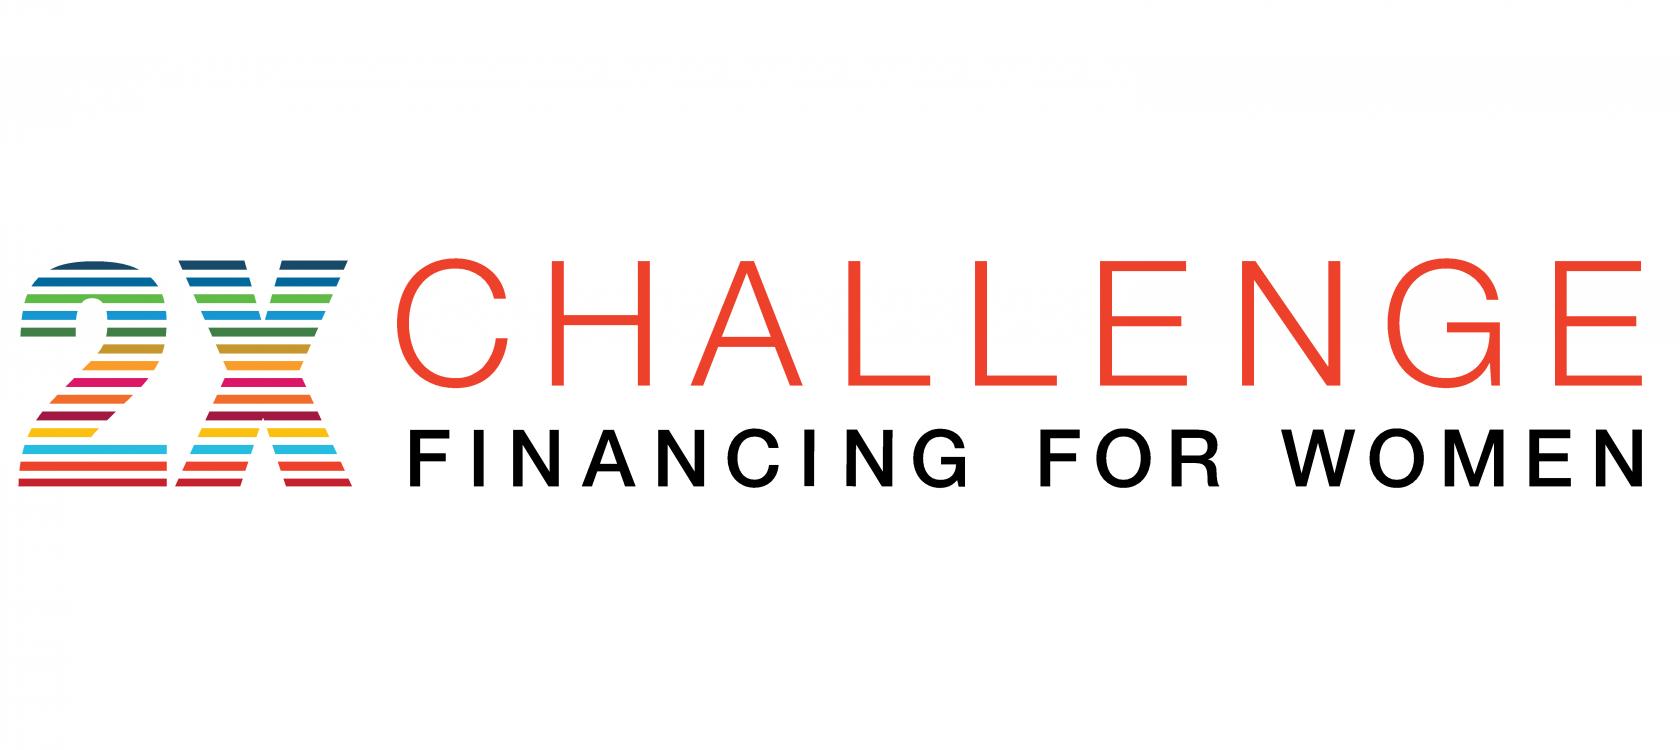 Le 2X Challenge se fixe un nouvel objectif de 15 milliards de dollars en faveur des femmes dans les pays en développement